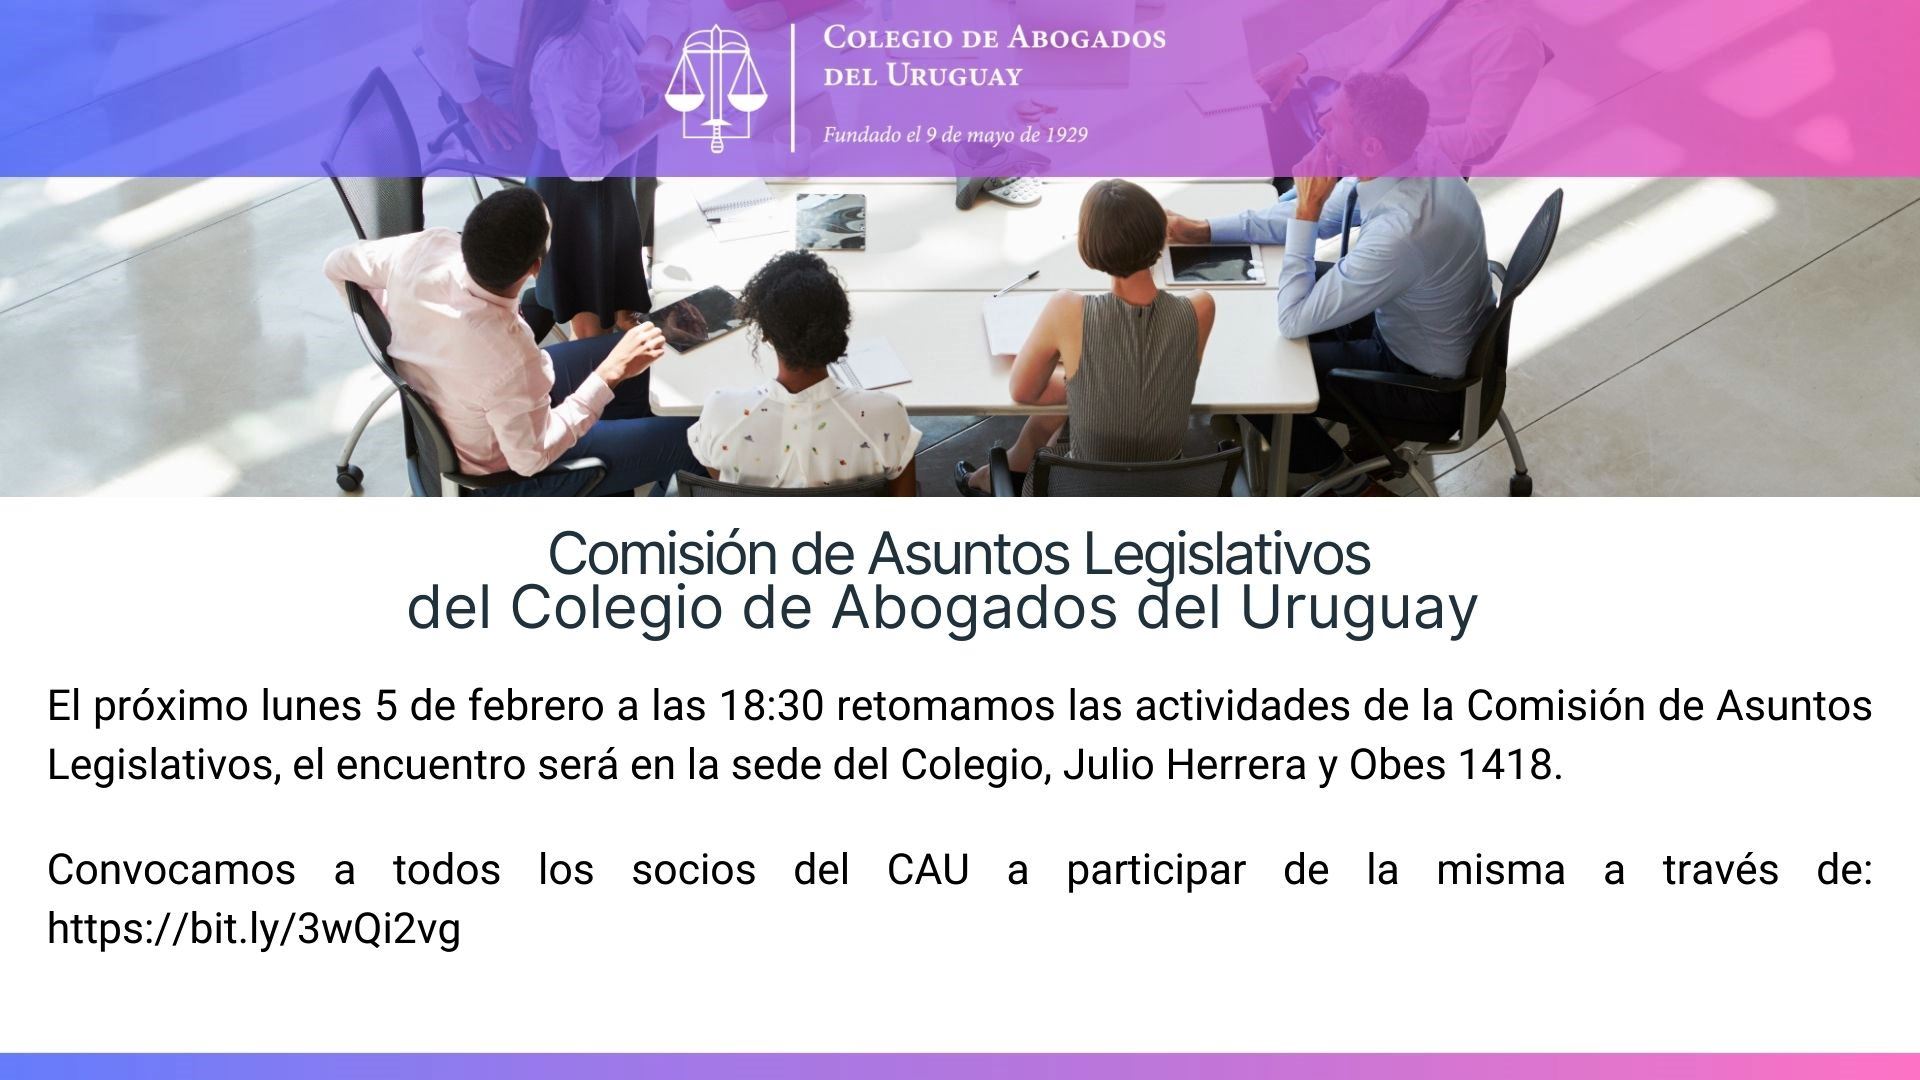 Comisión de Asuntos Legislativos del Colegio de Abogados del Uruguay.